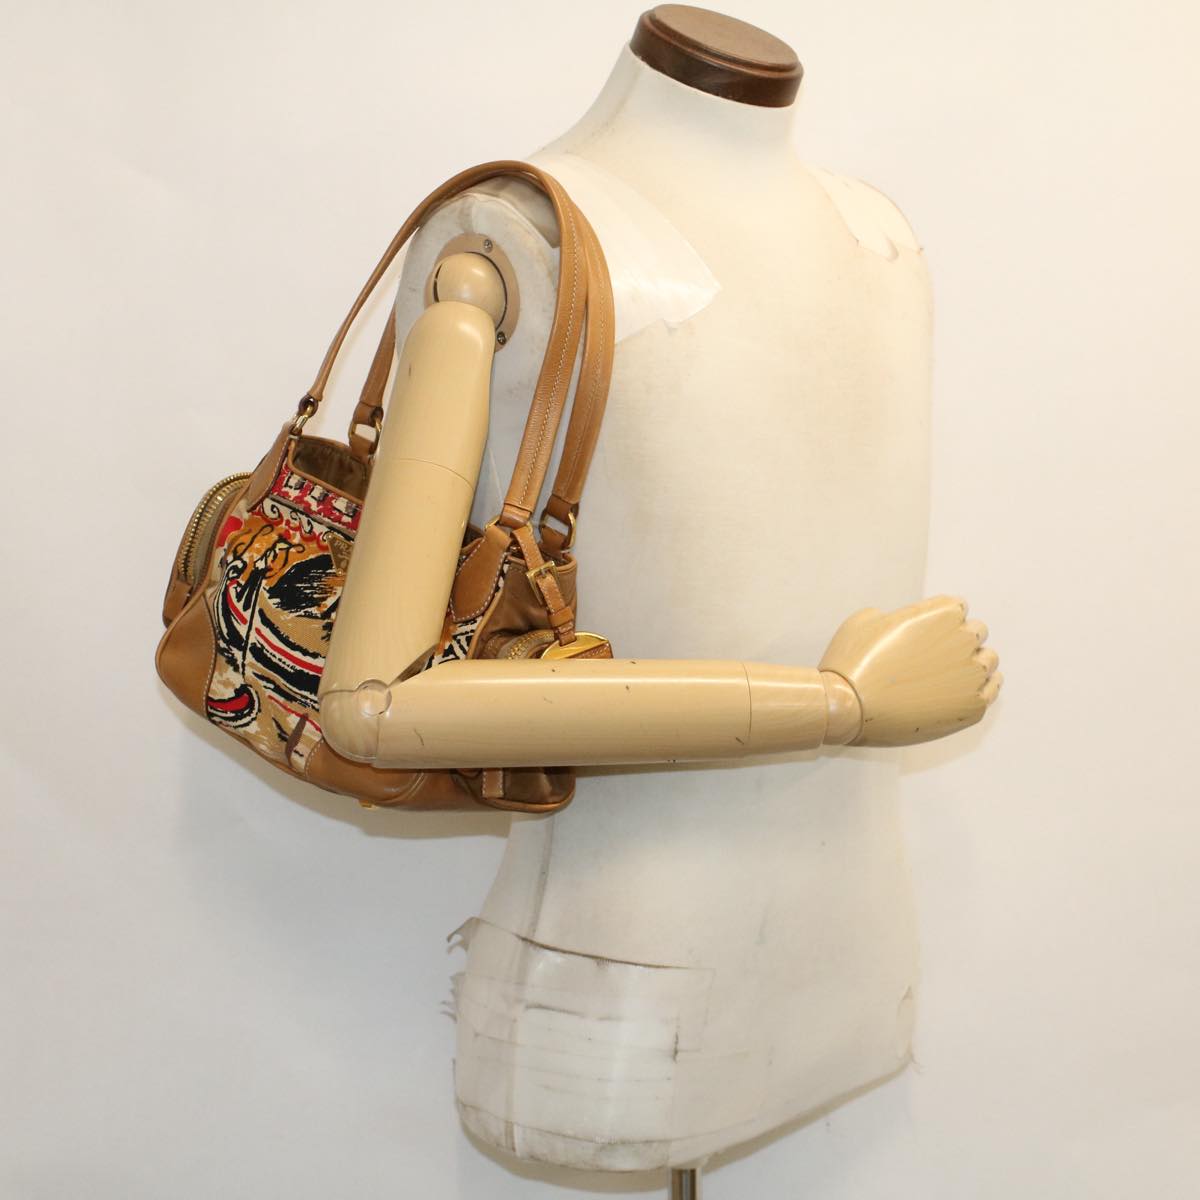 PRADA Shoulder Bag Canvas Brown Auth ep1246